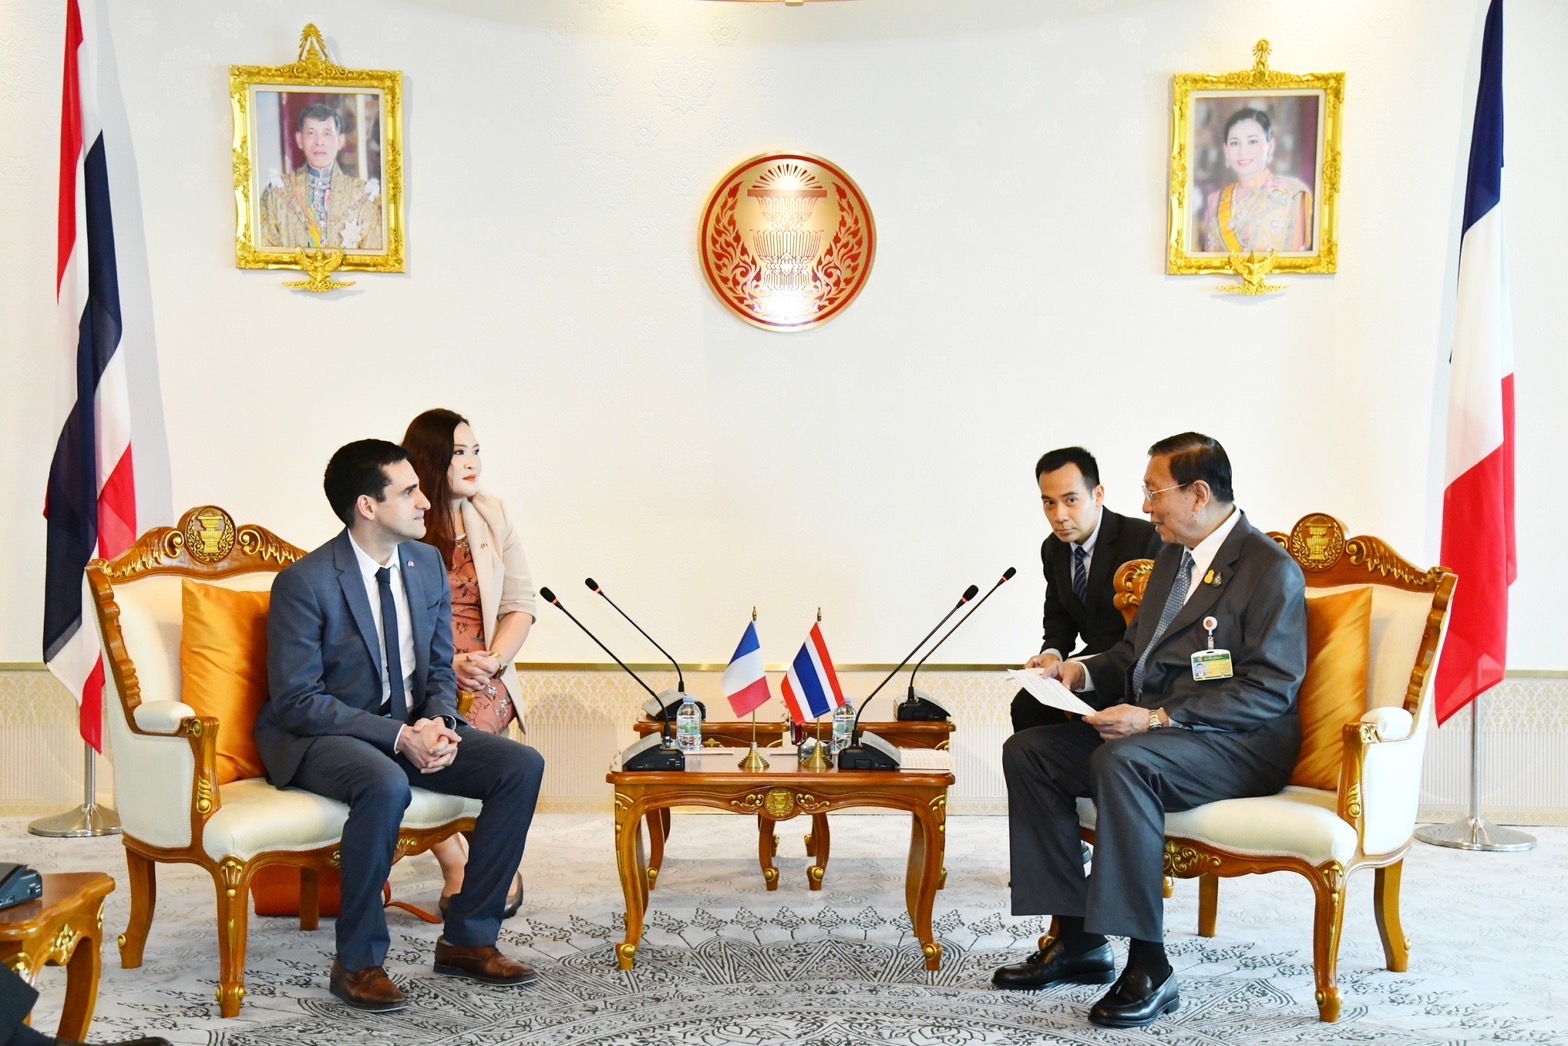 ประธานวุฒิสภาให้การรับรองนายญาณ ชองแทร็ล (Mr. Yan Chantrel) สมาชิกวุฒิสภาฝรั่งเศส ในโอกาสเดินทางเยือนประเทศไทย เมื่อวันที่ ๑๘ เมษายน ๒๕๖๖